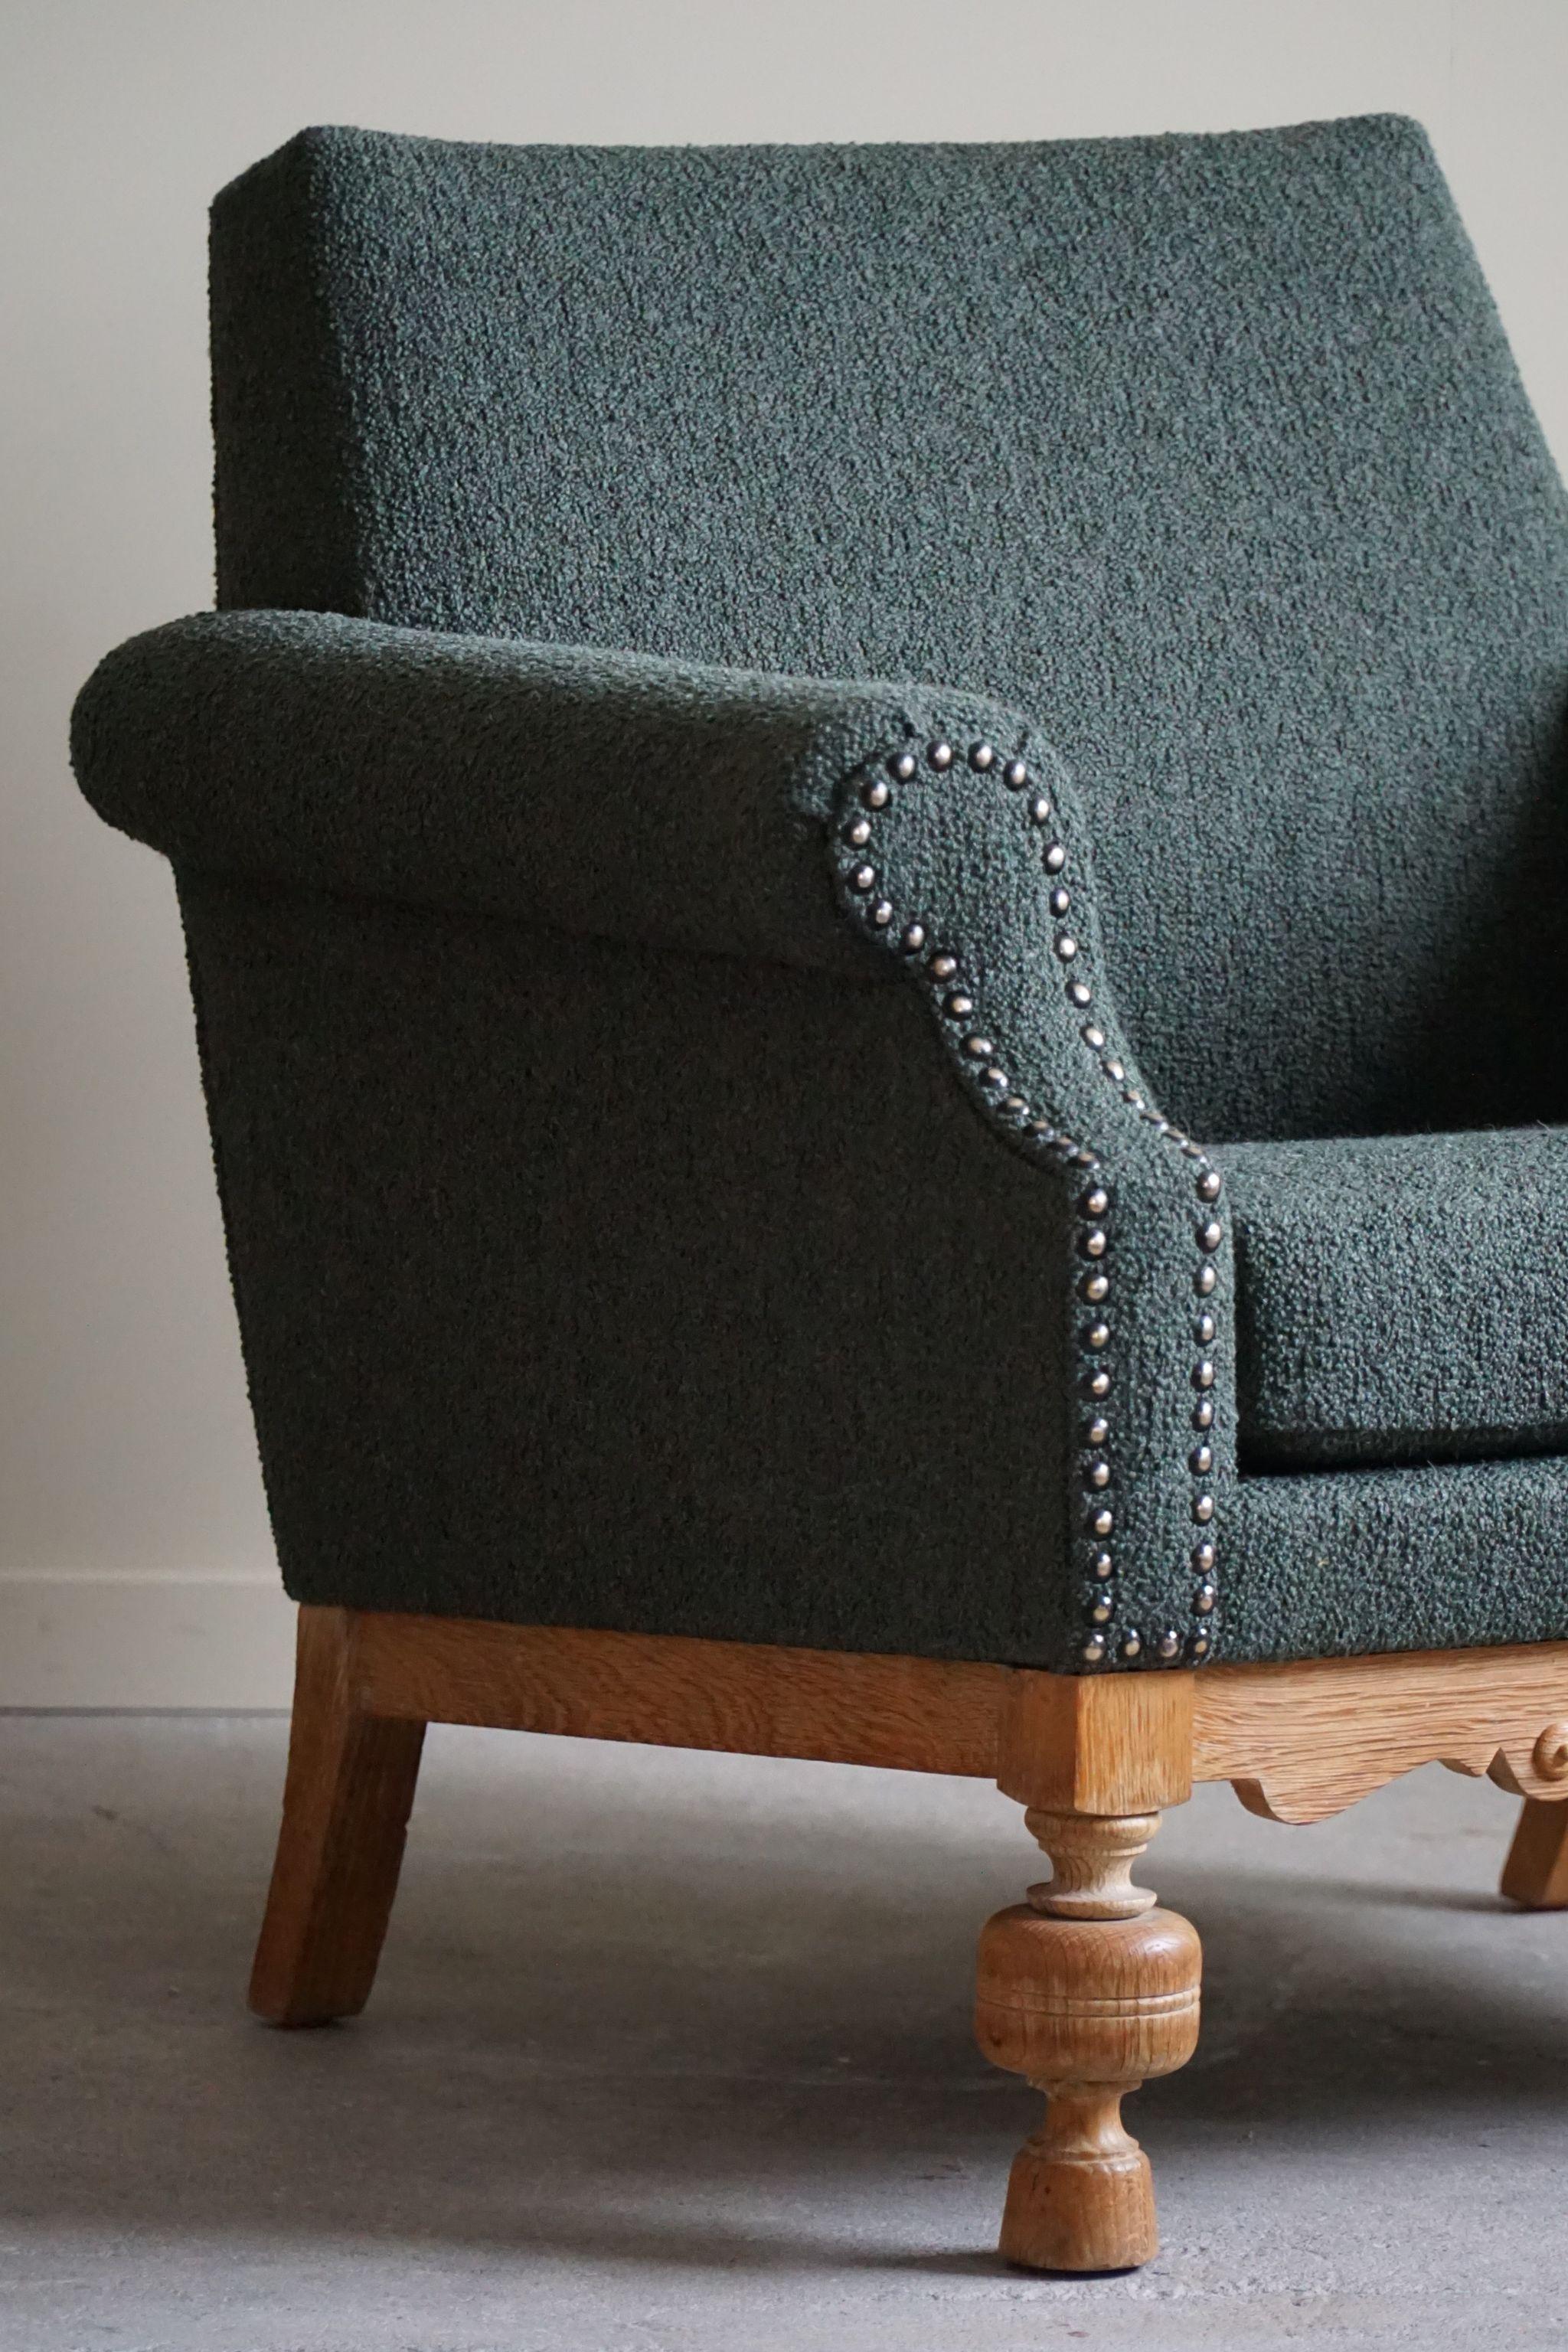 Lounge Chair in Oak & Green Bouclé, Danish Mid-Century Modern, 1950s For Sale 5